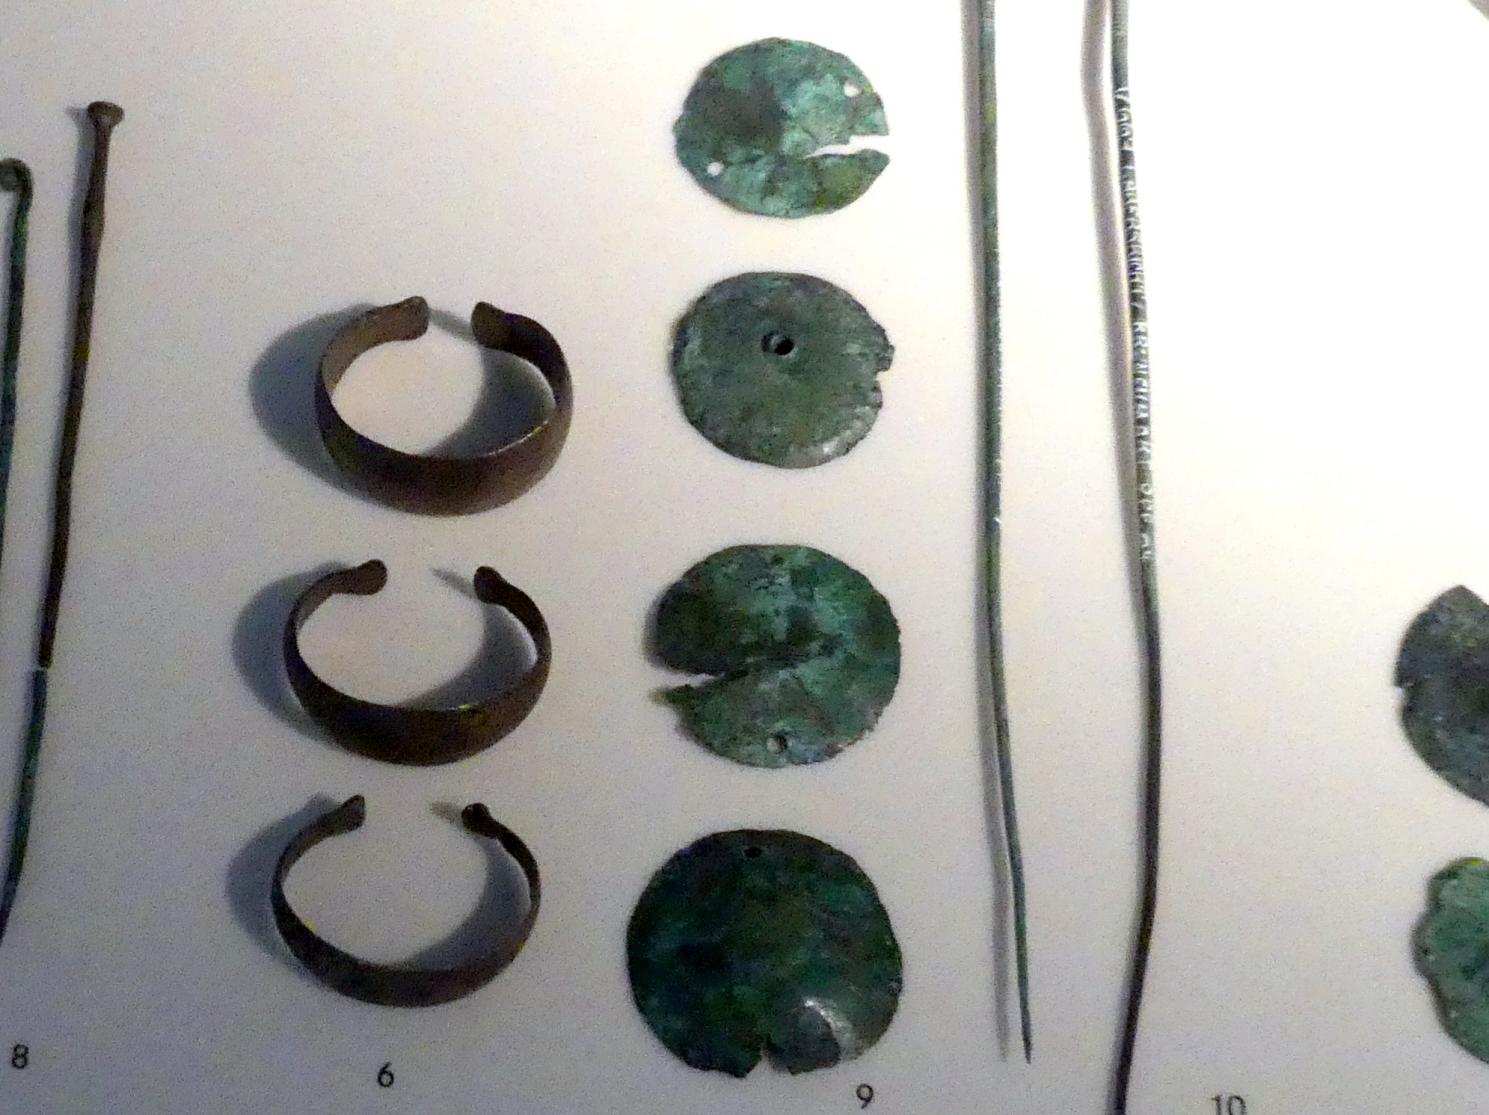 Zierscheiben, ziseliert, Mittlere Bronzezeit, 3000 - 1300 v. Chr., 1600 - 1300 v. Chr., Bild 1/2